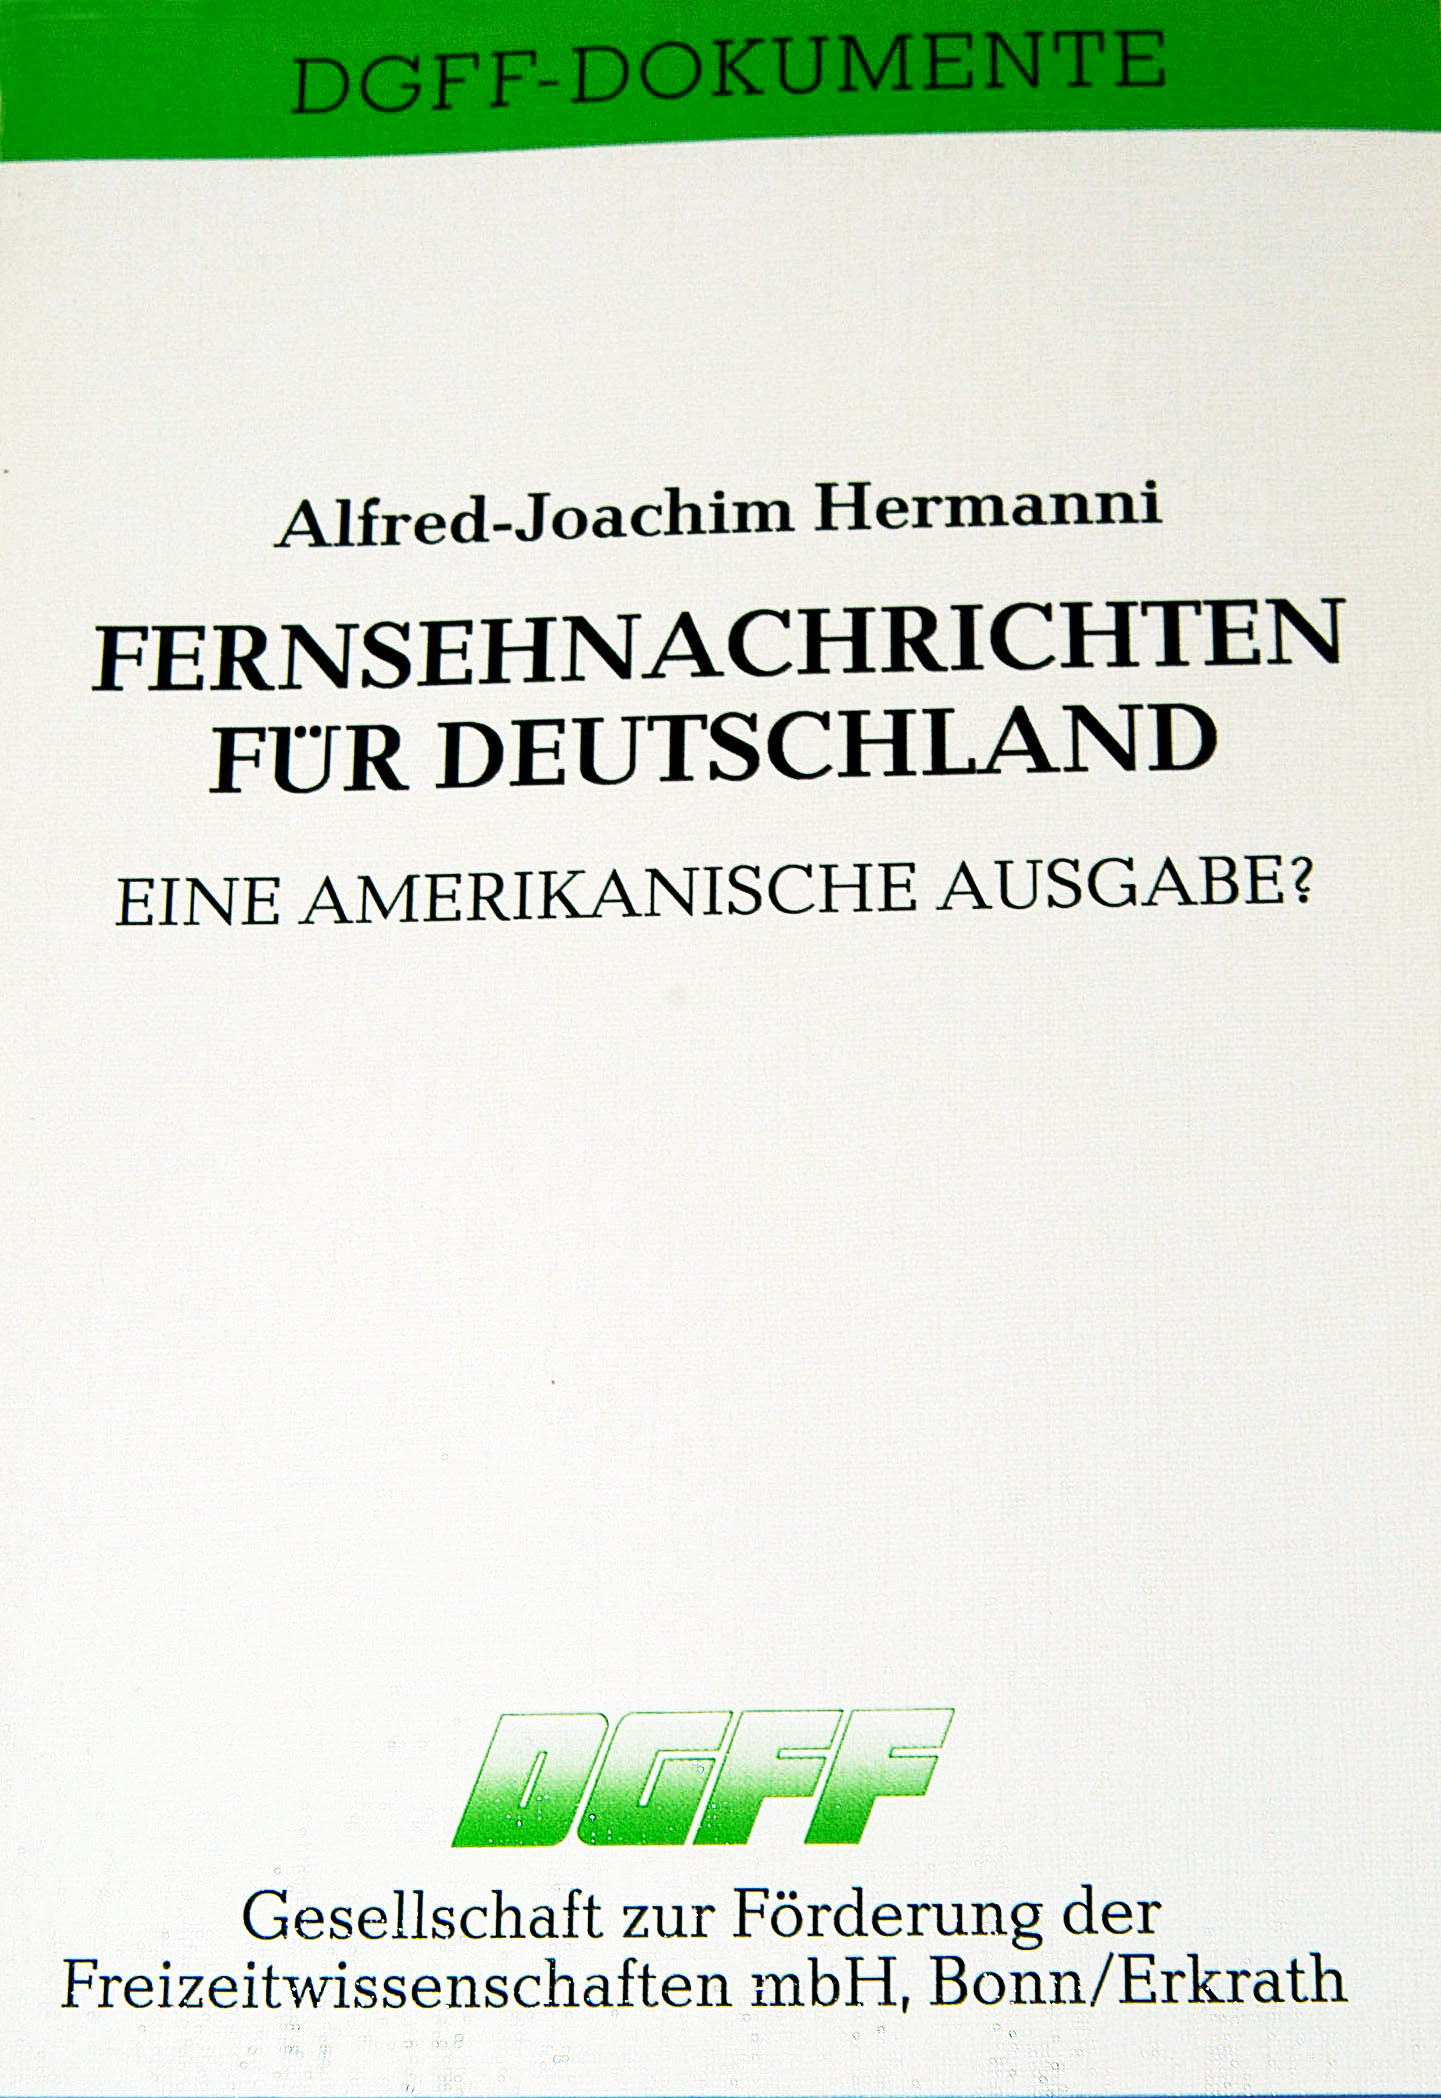 Buchtitel "Fernsehnachrichten für Deutschland. Eine amerikanische Ausgabe?" von Professor Dr. Alfred-Joachim Hermanni